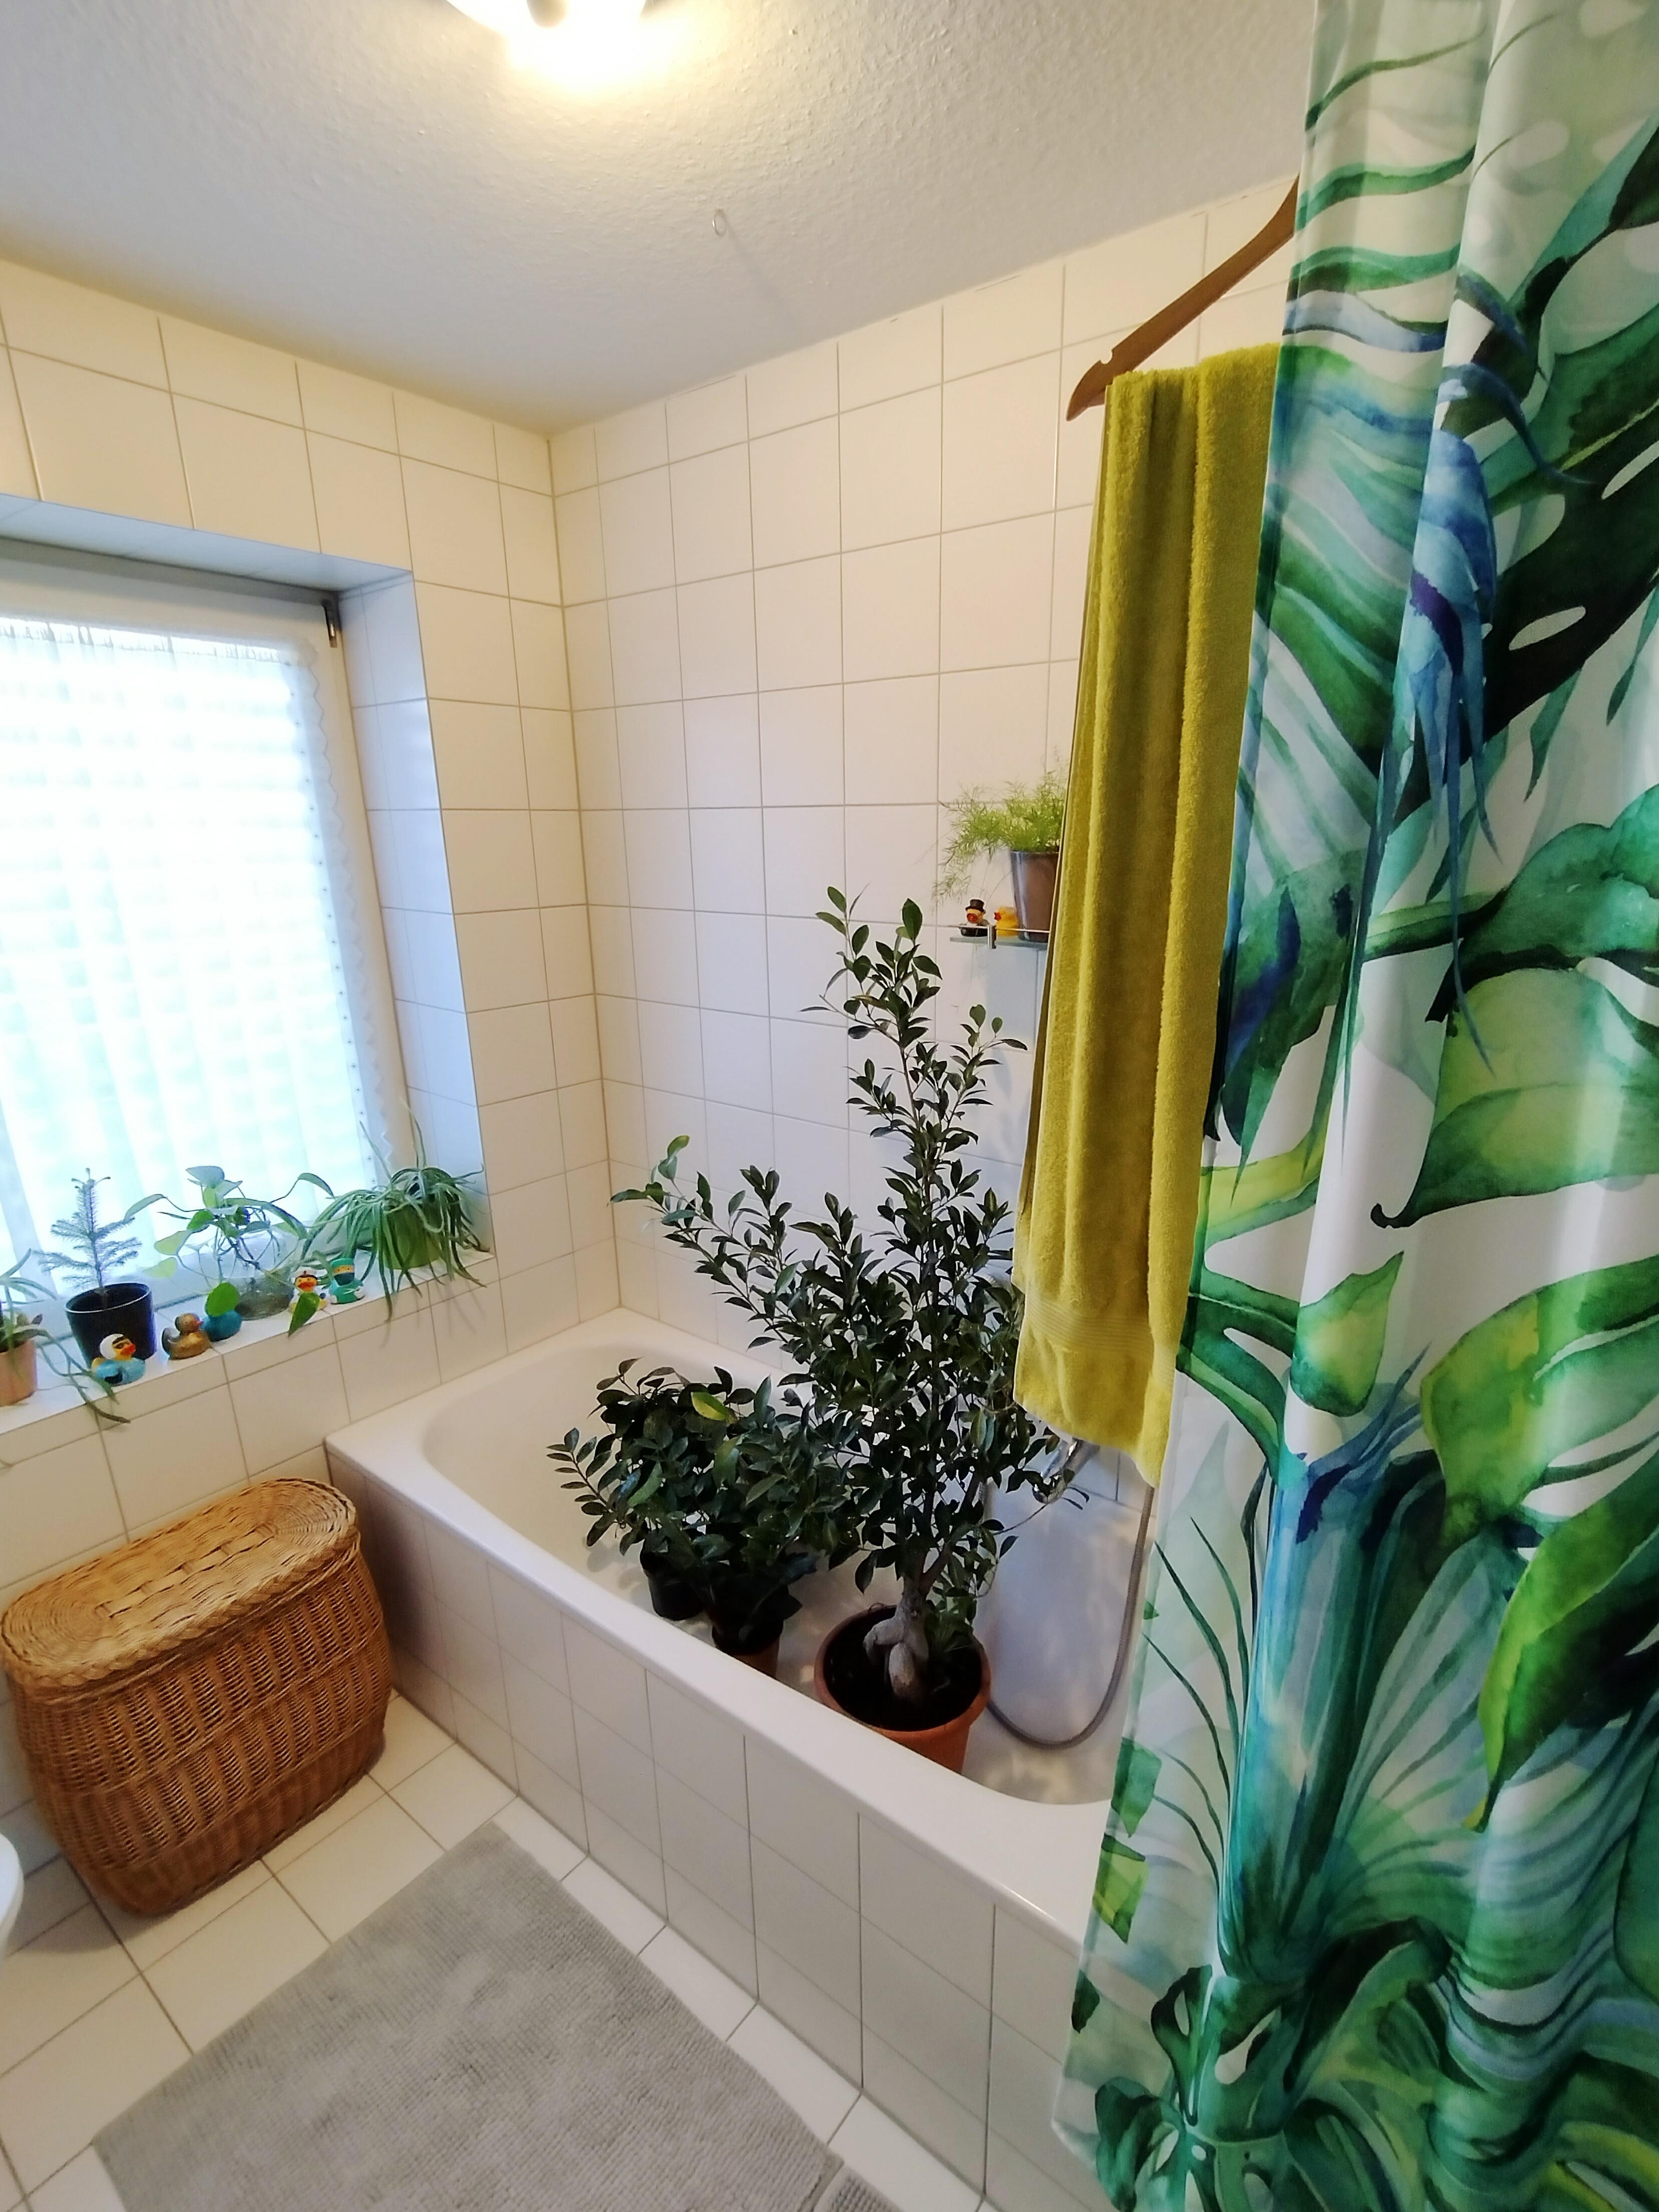 Pflanzenpflege 💚🪴
#bad #badezimmer #badewanne #dusche #wäschekorb #duschvorhang #pflanzen #pflanzenliebe #tageslicht